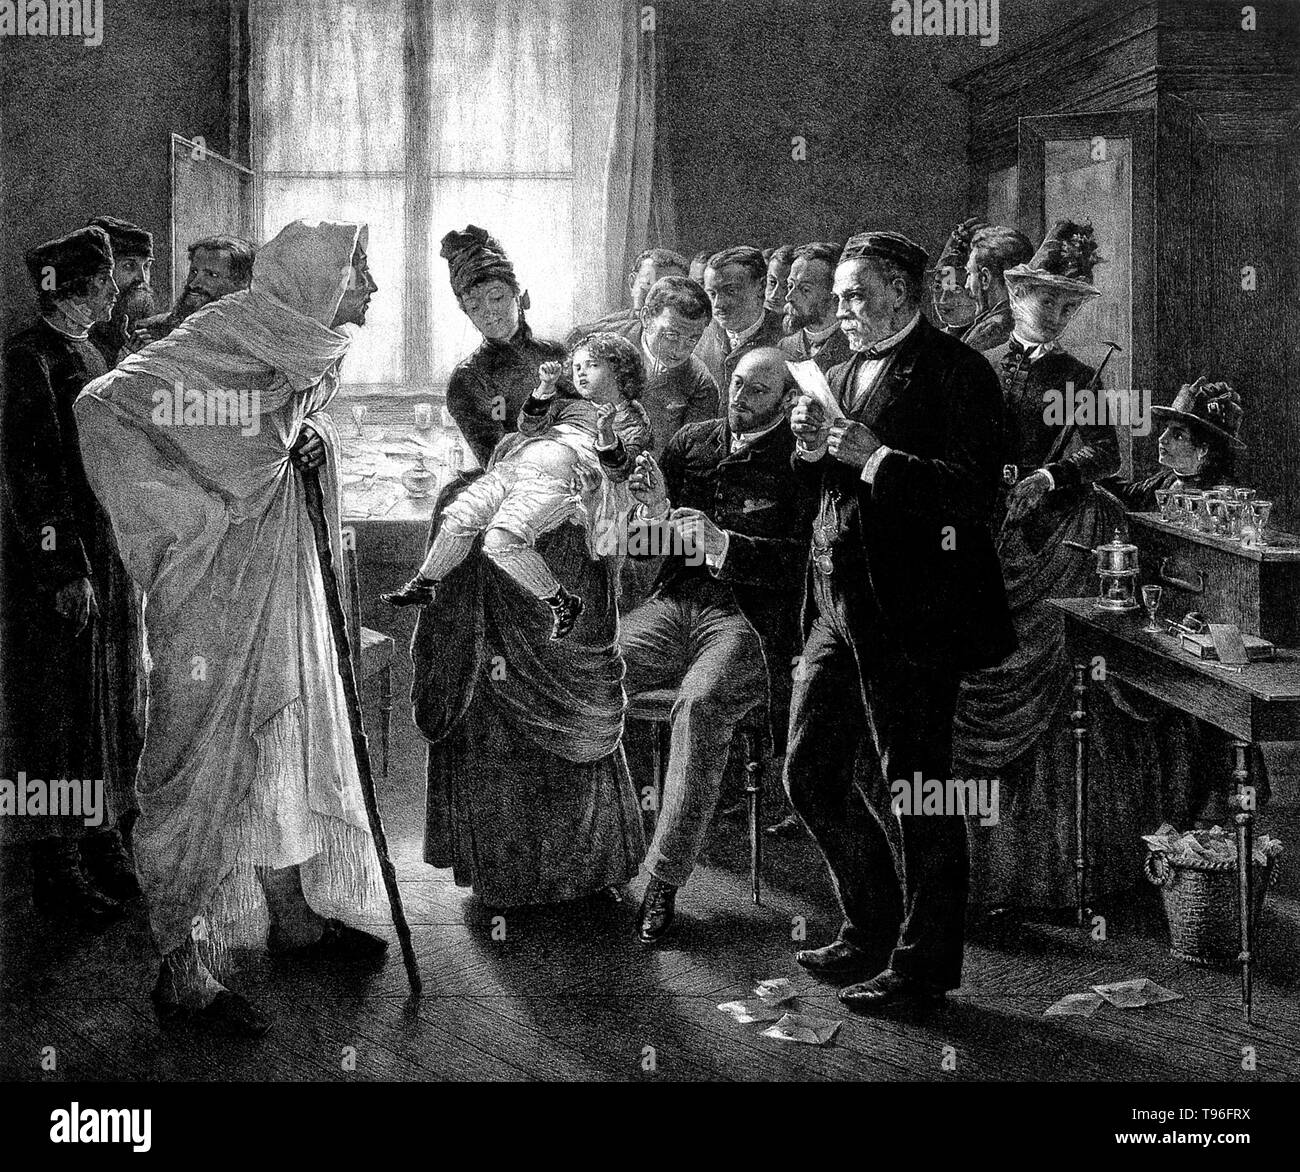 La vaccination contre la rage dans la clinique Pasteur à Paris. Louis Pasteur (27 décembre 1822 - 28 septembre 1895) était un chimiste français, et qui a fondé le bactériologiste La science de la microbiologie. Le pâturage a découvert qu'il pouvait être causée par une bactérie transmise de personne à personne (la théorie des germes de maladies). Il a également mis au point des vaccins contre la rage et de l'anthrax. Pasteur a également constaté que le chauffage des aliments et boissons à la légère pouvait les préserver de la dégradation. Banque D'Images